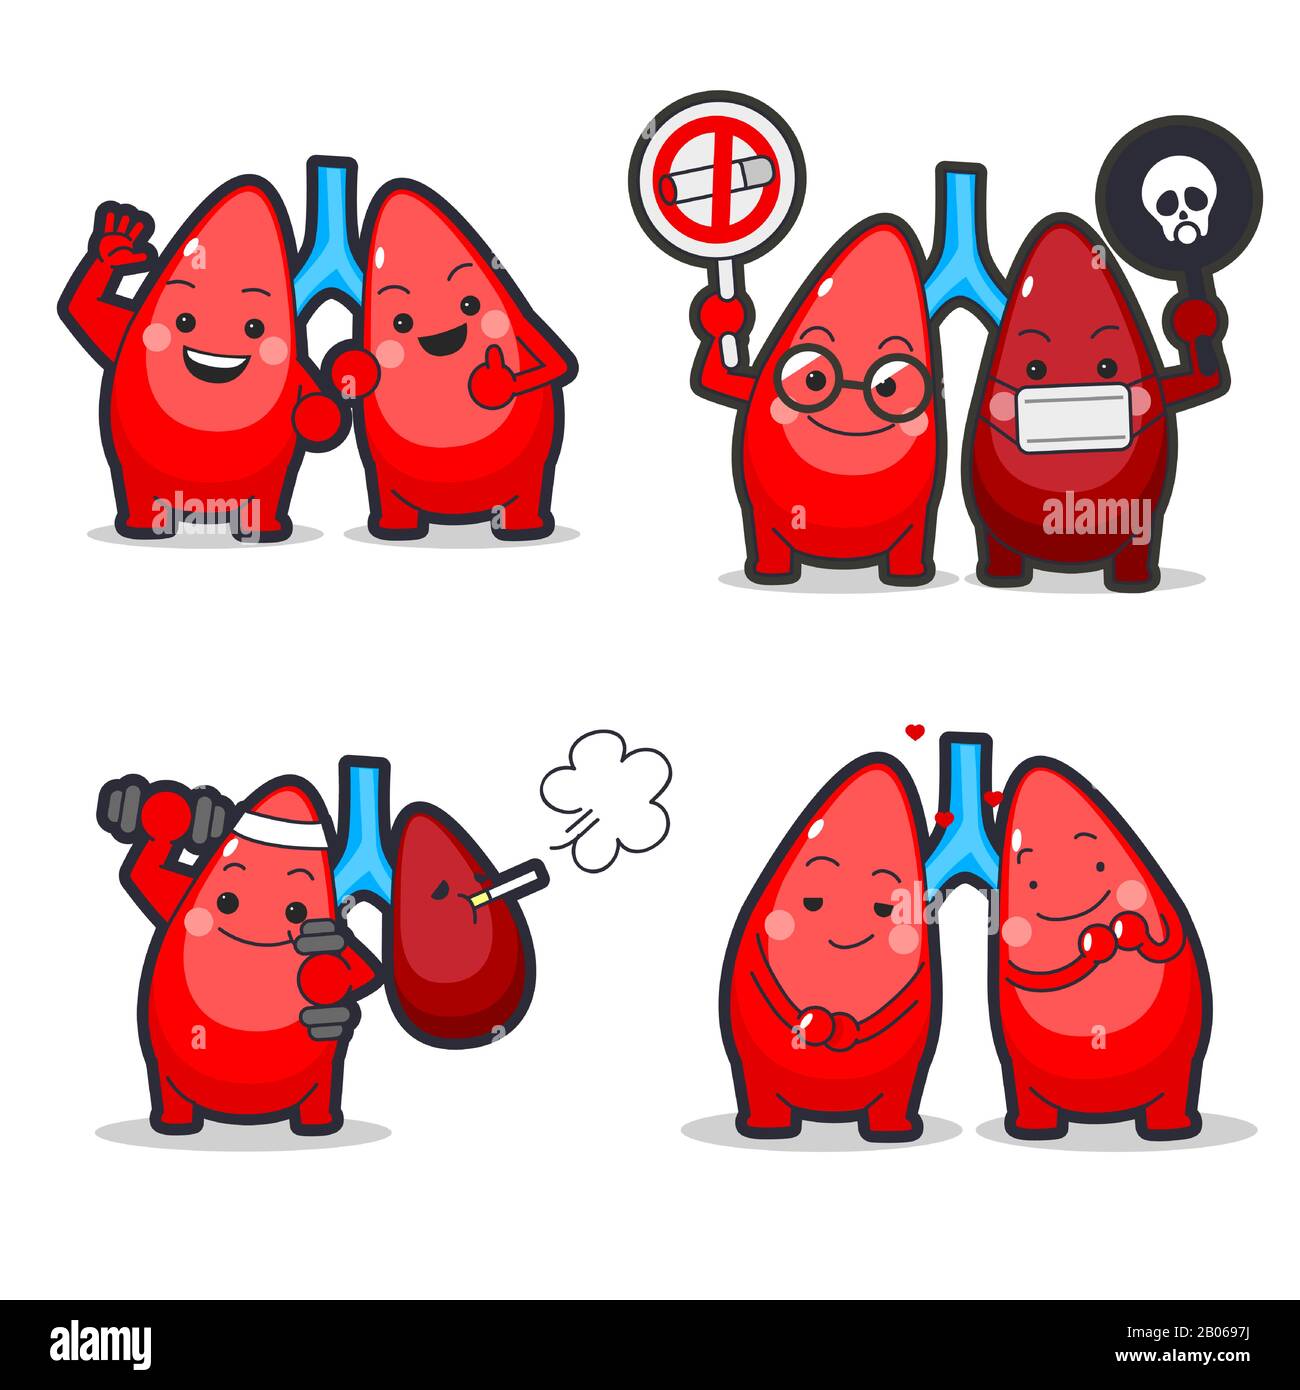 Symbole für medizinische Zeichen setzen Cartoon-Stil-Abbildung 008 Stock Vektor